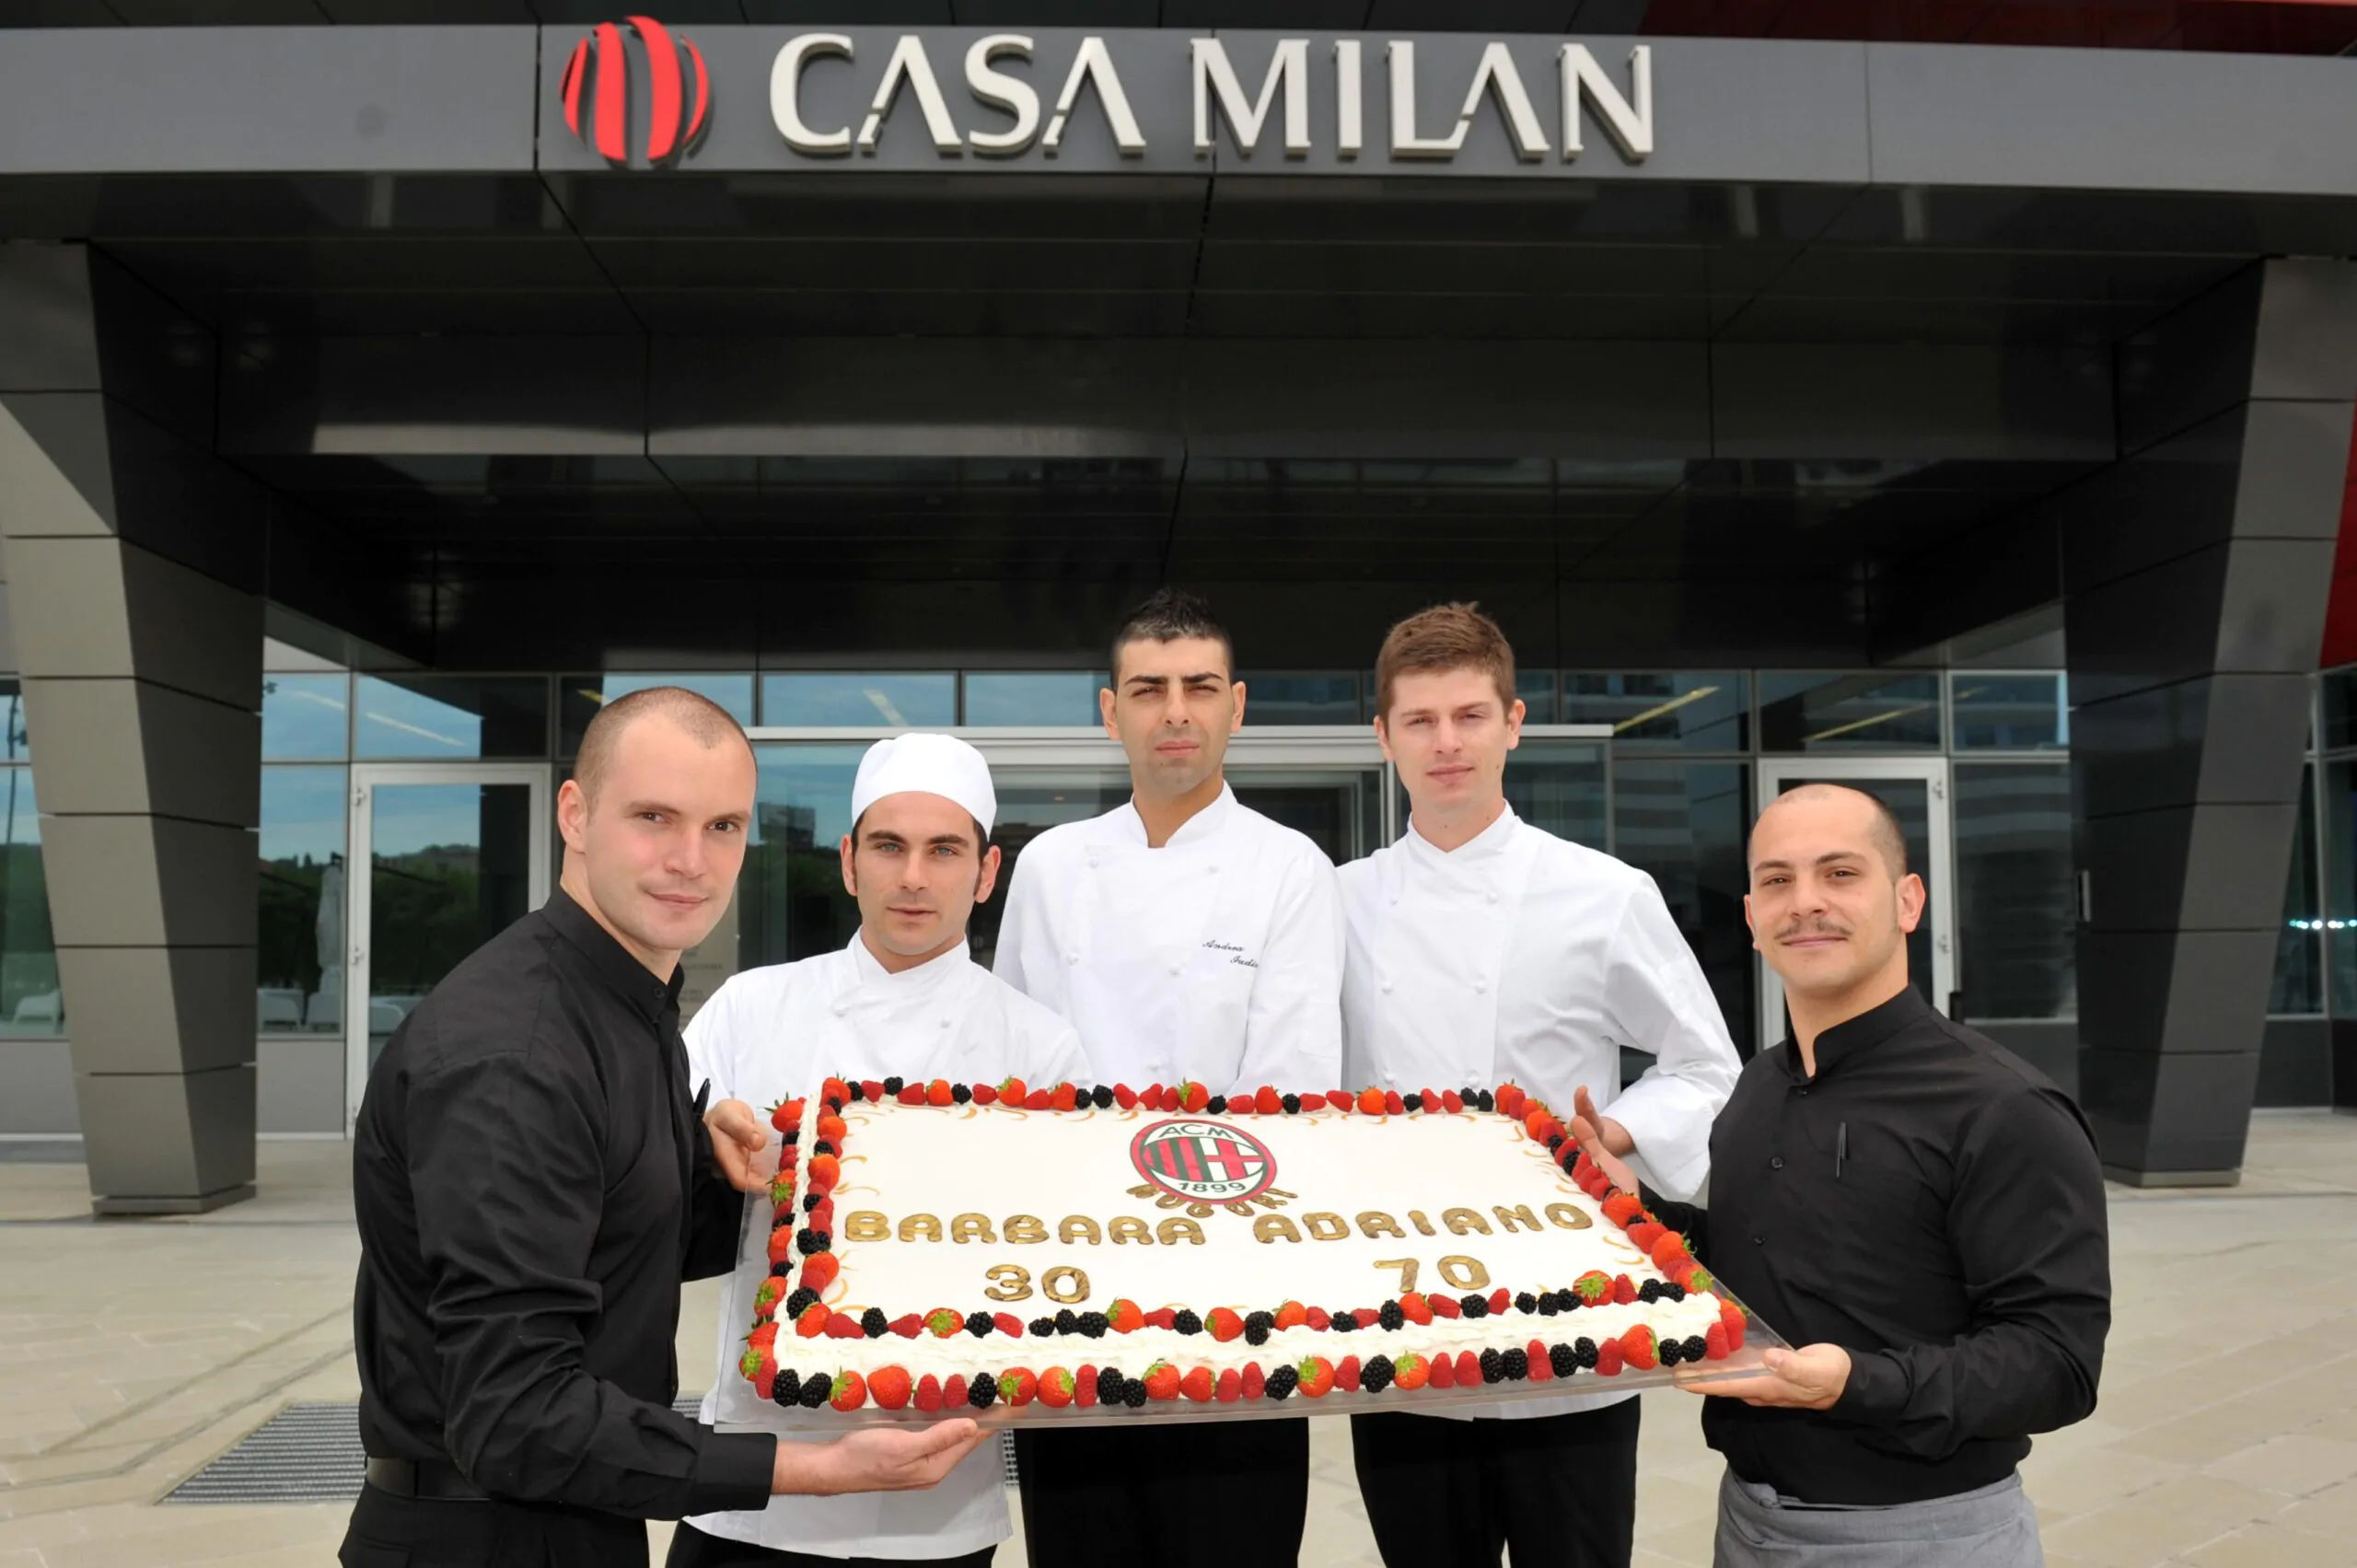 <i>Casa Milan</i>, questo pomeriggio verrà offerta una fetta di torta per i compleanni di Barbara Berlusconi e Galliani